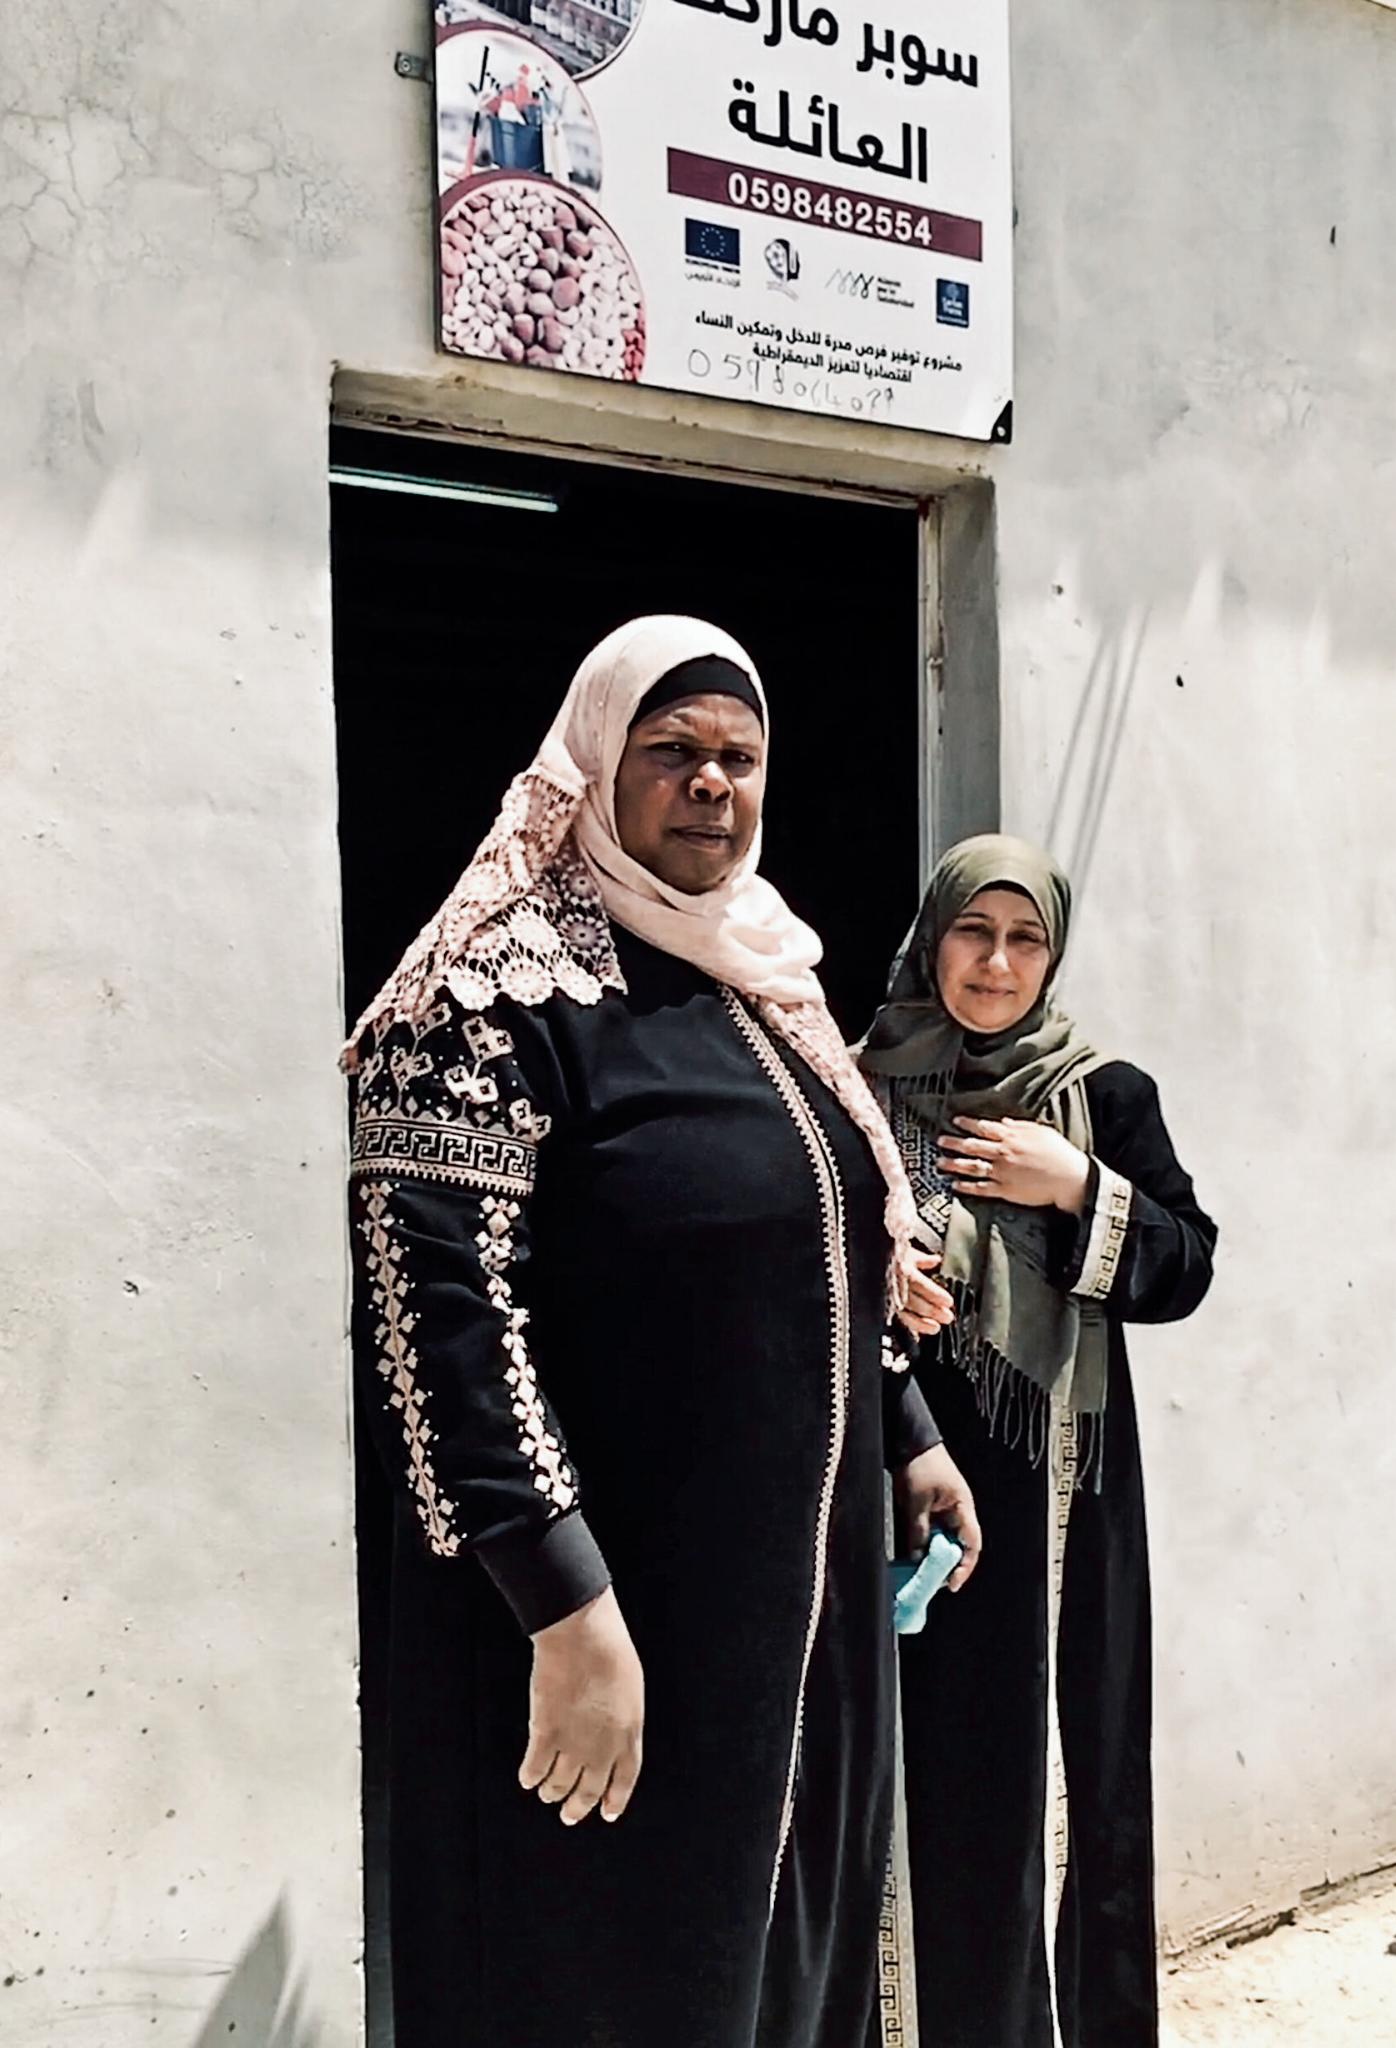  Iman oraz Dalal przed wejściem do sklepiku, o którego otworzenie walczyły. (Fot. Katarzyna Boni)